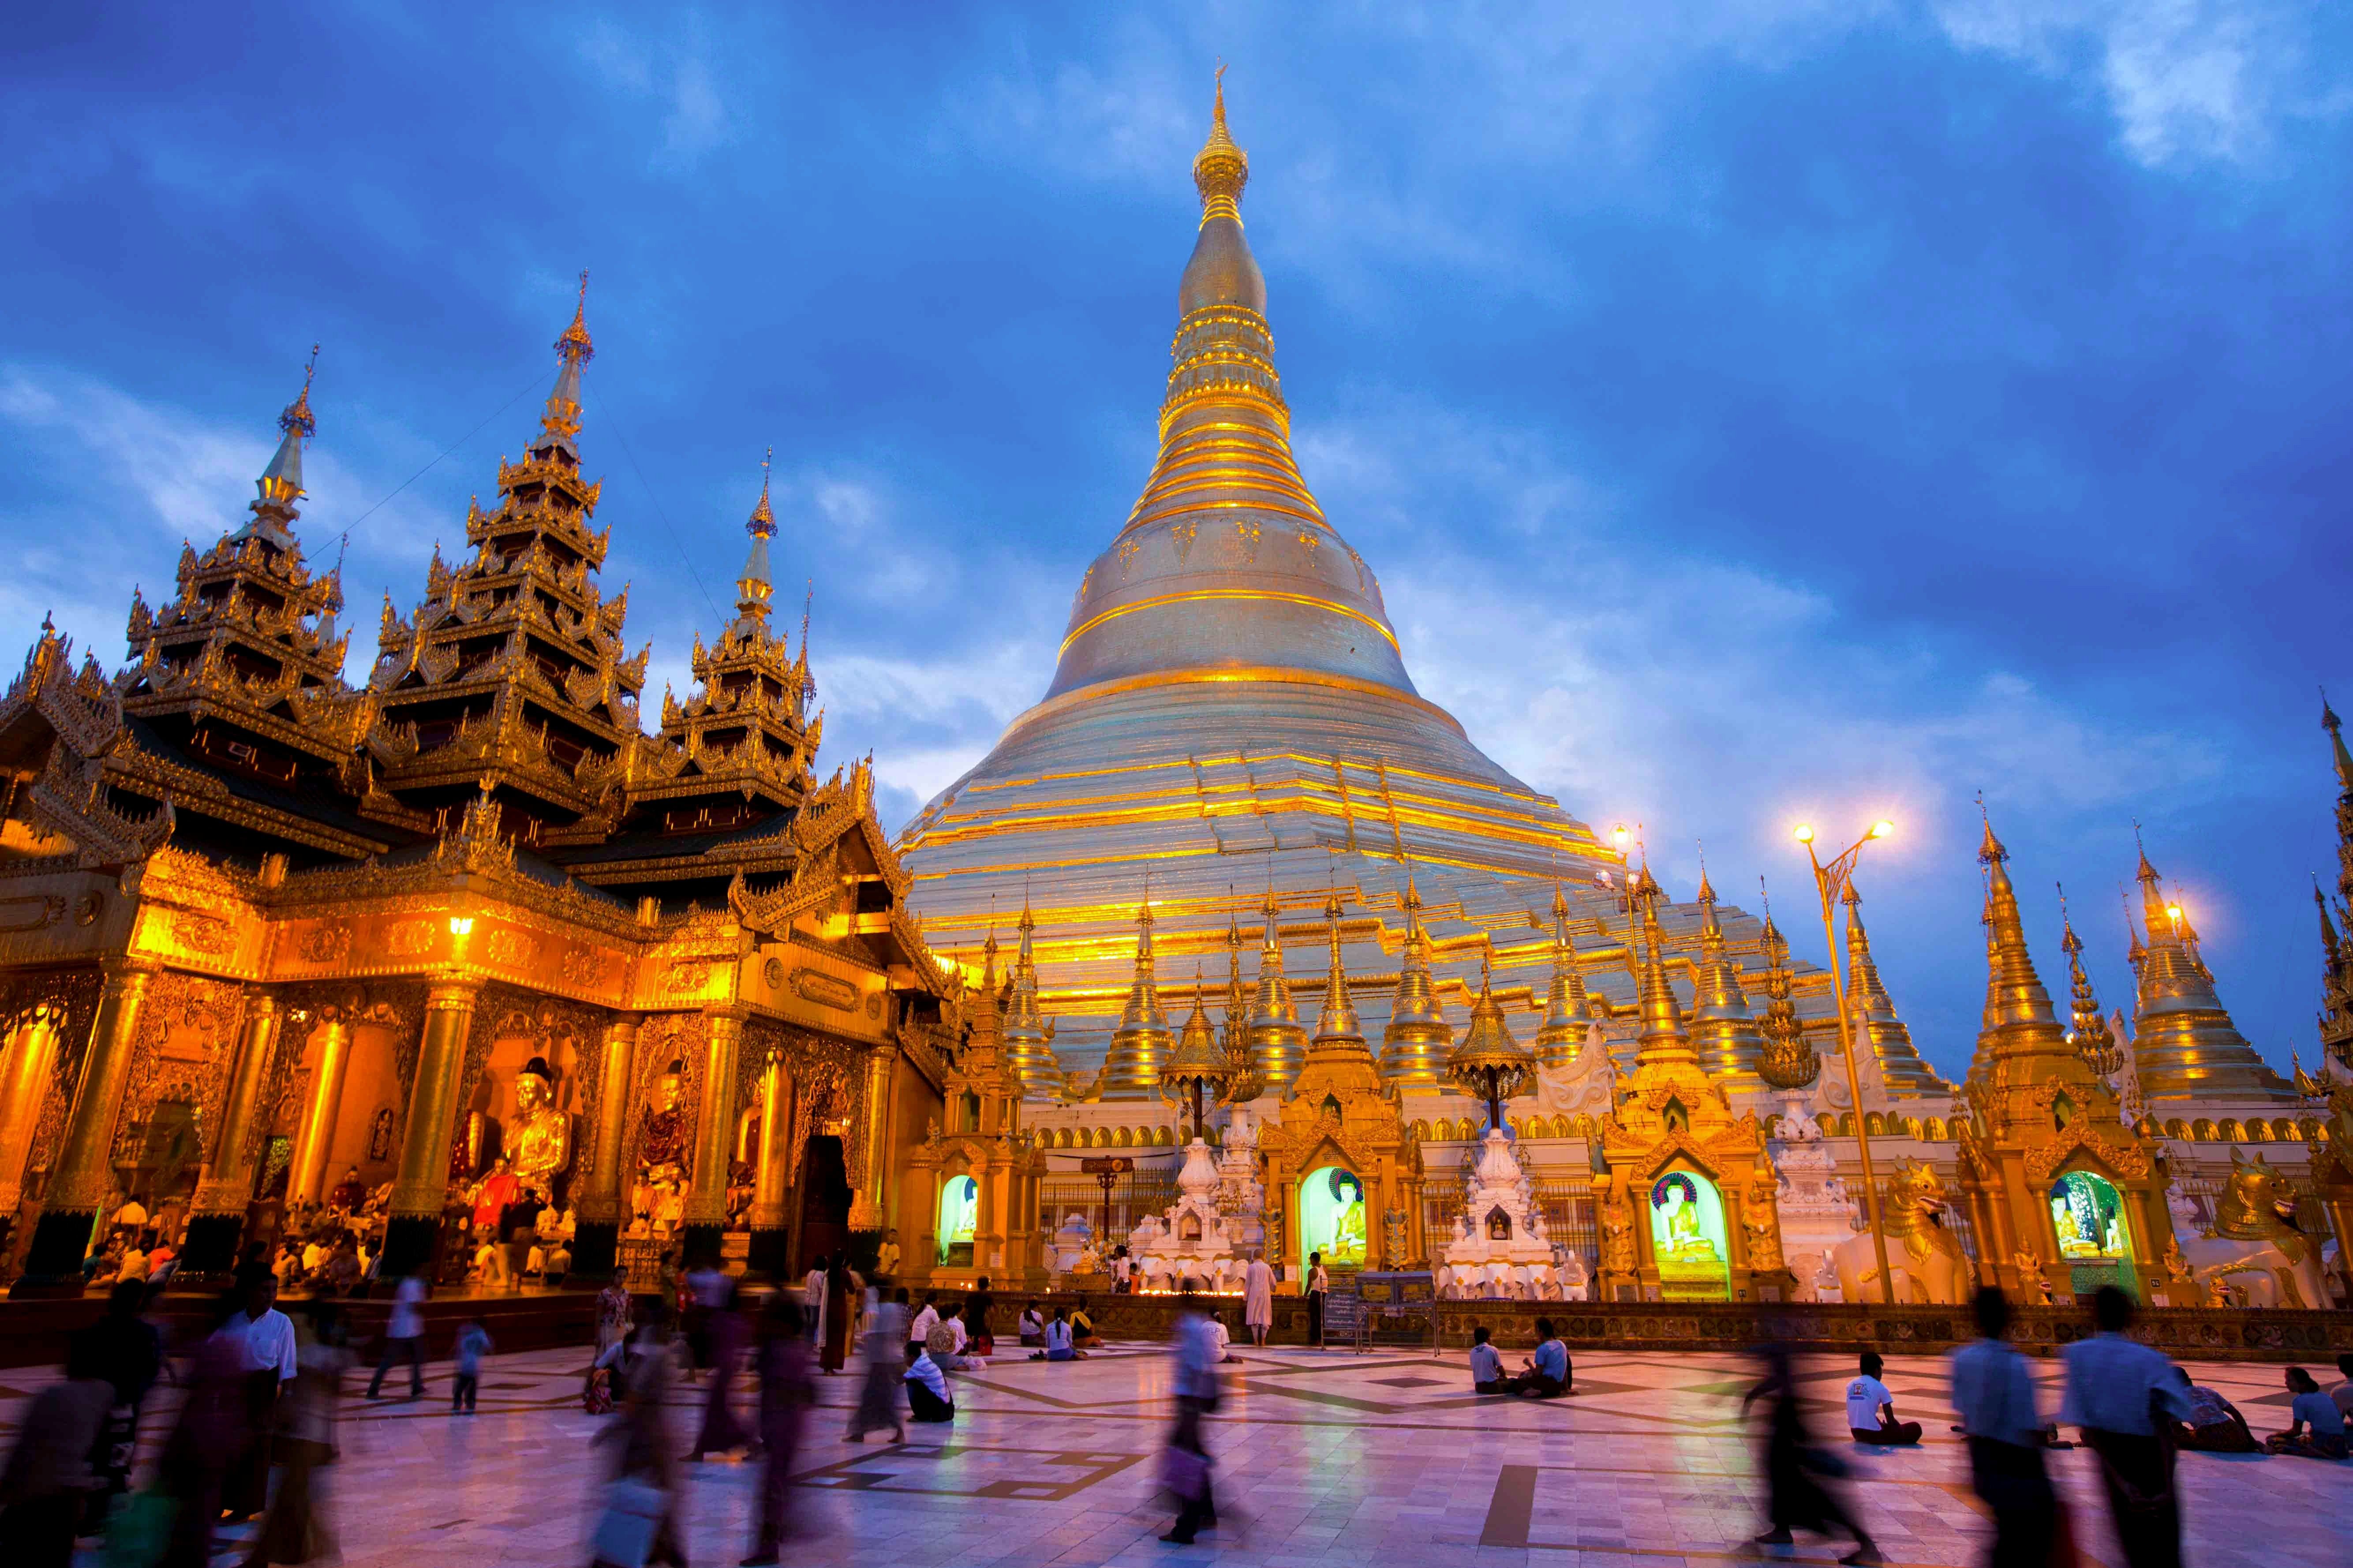 Shwedagon Pagoda Yangon , HD Wallpaper & Backgrounds